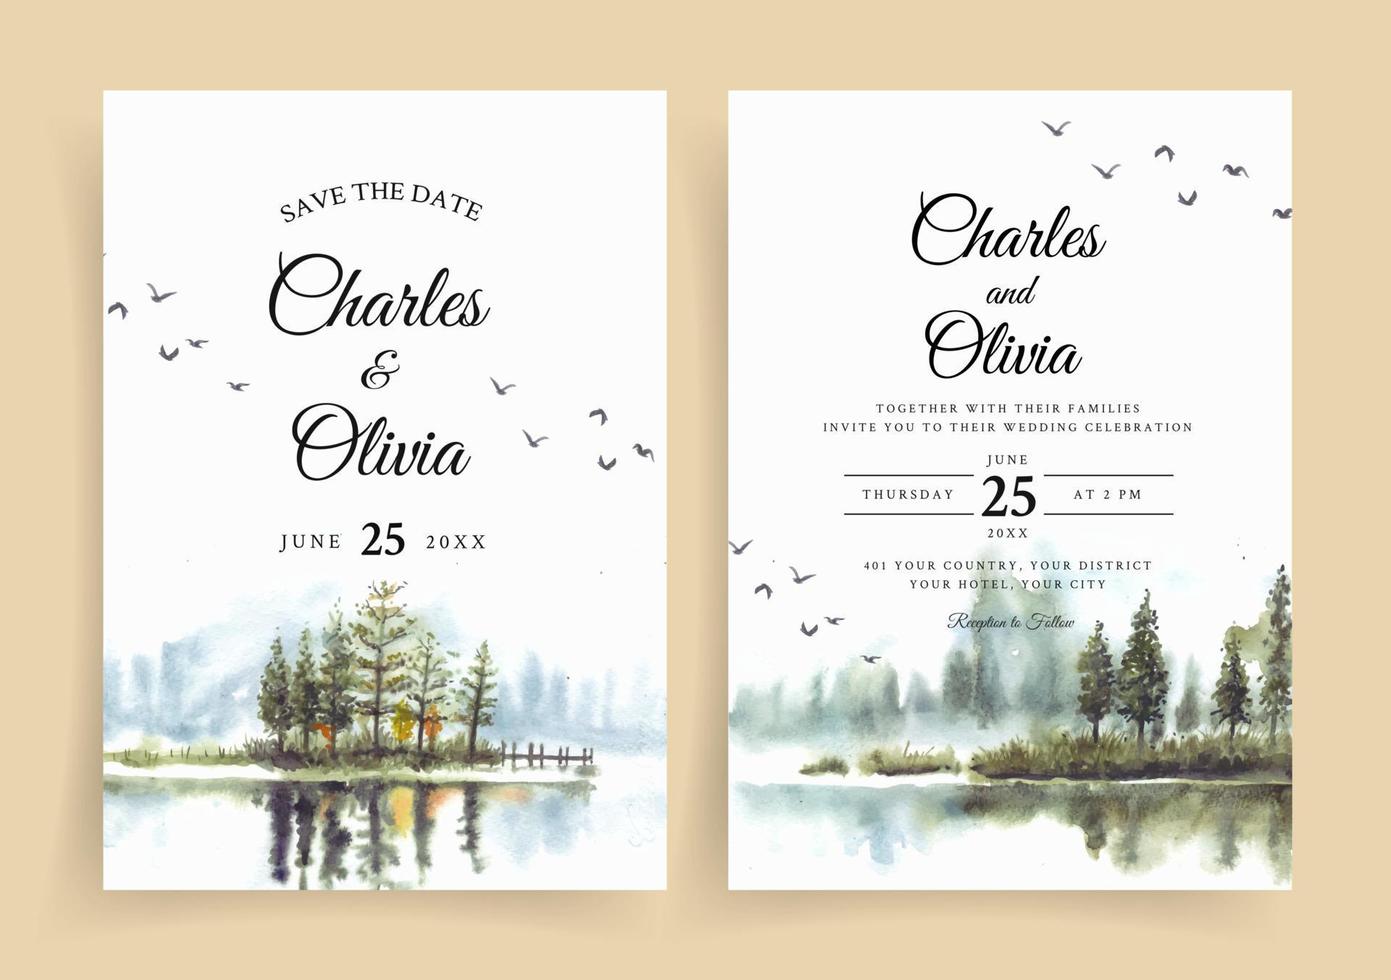 invitation de mariage aquarelle avec reflet de beaux pins dans le lac vecteur